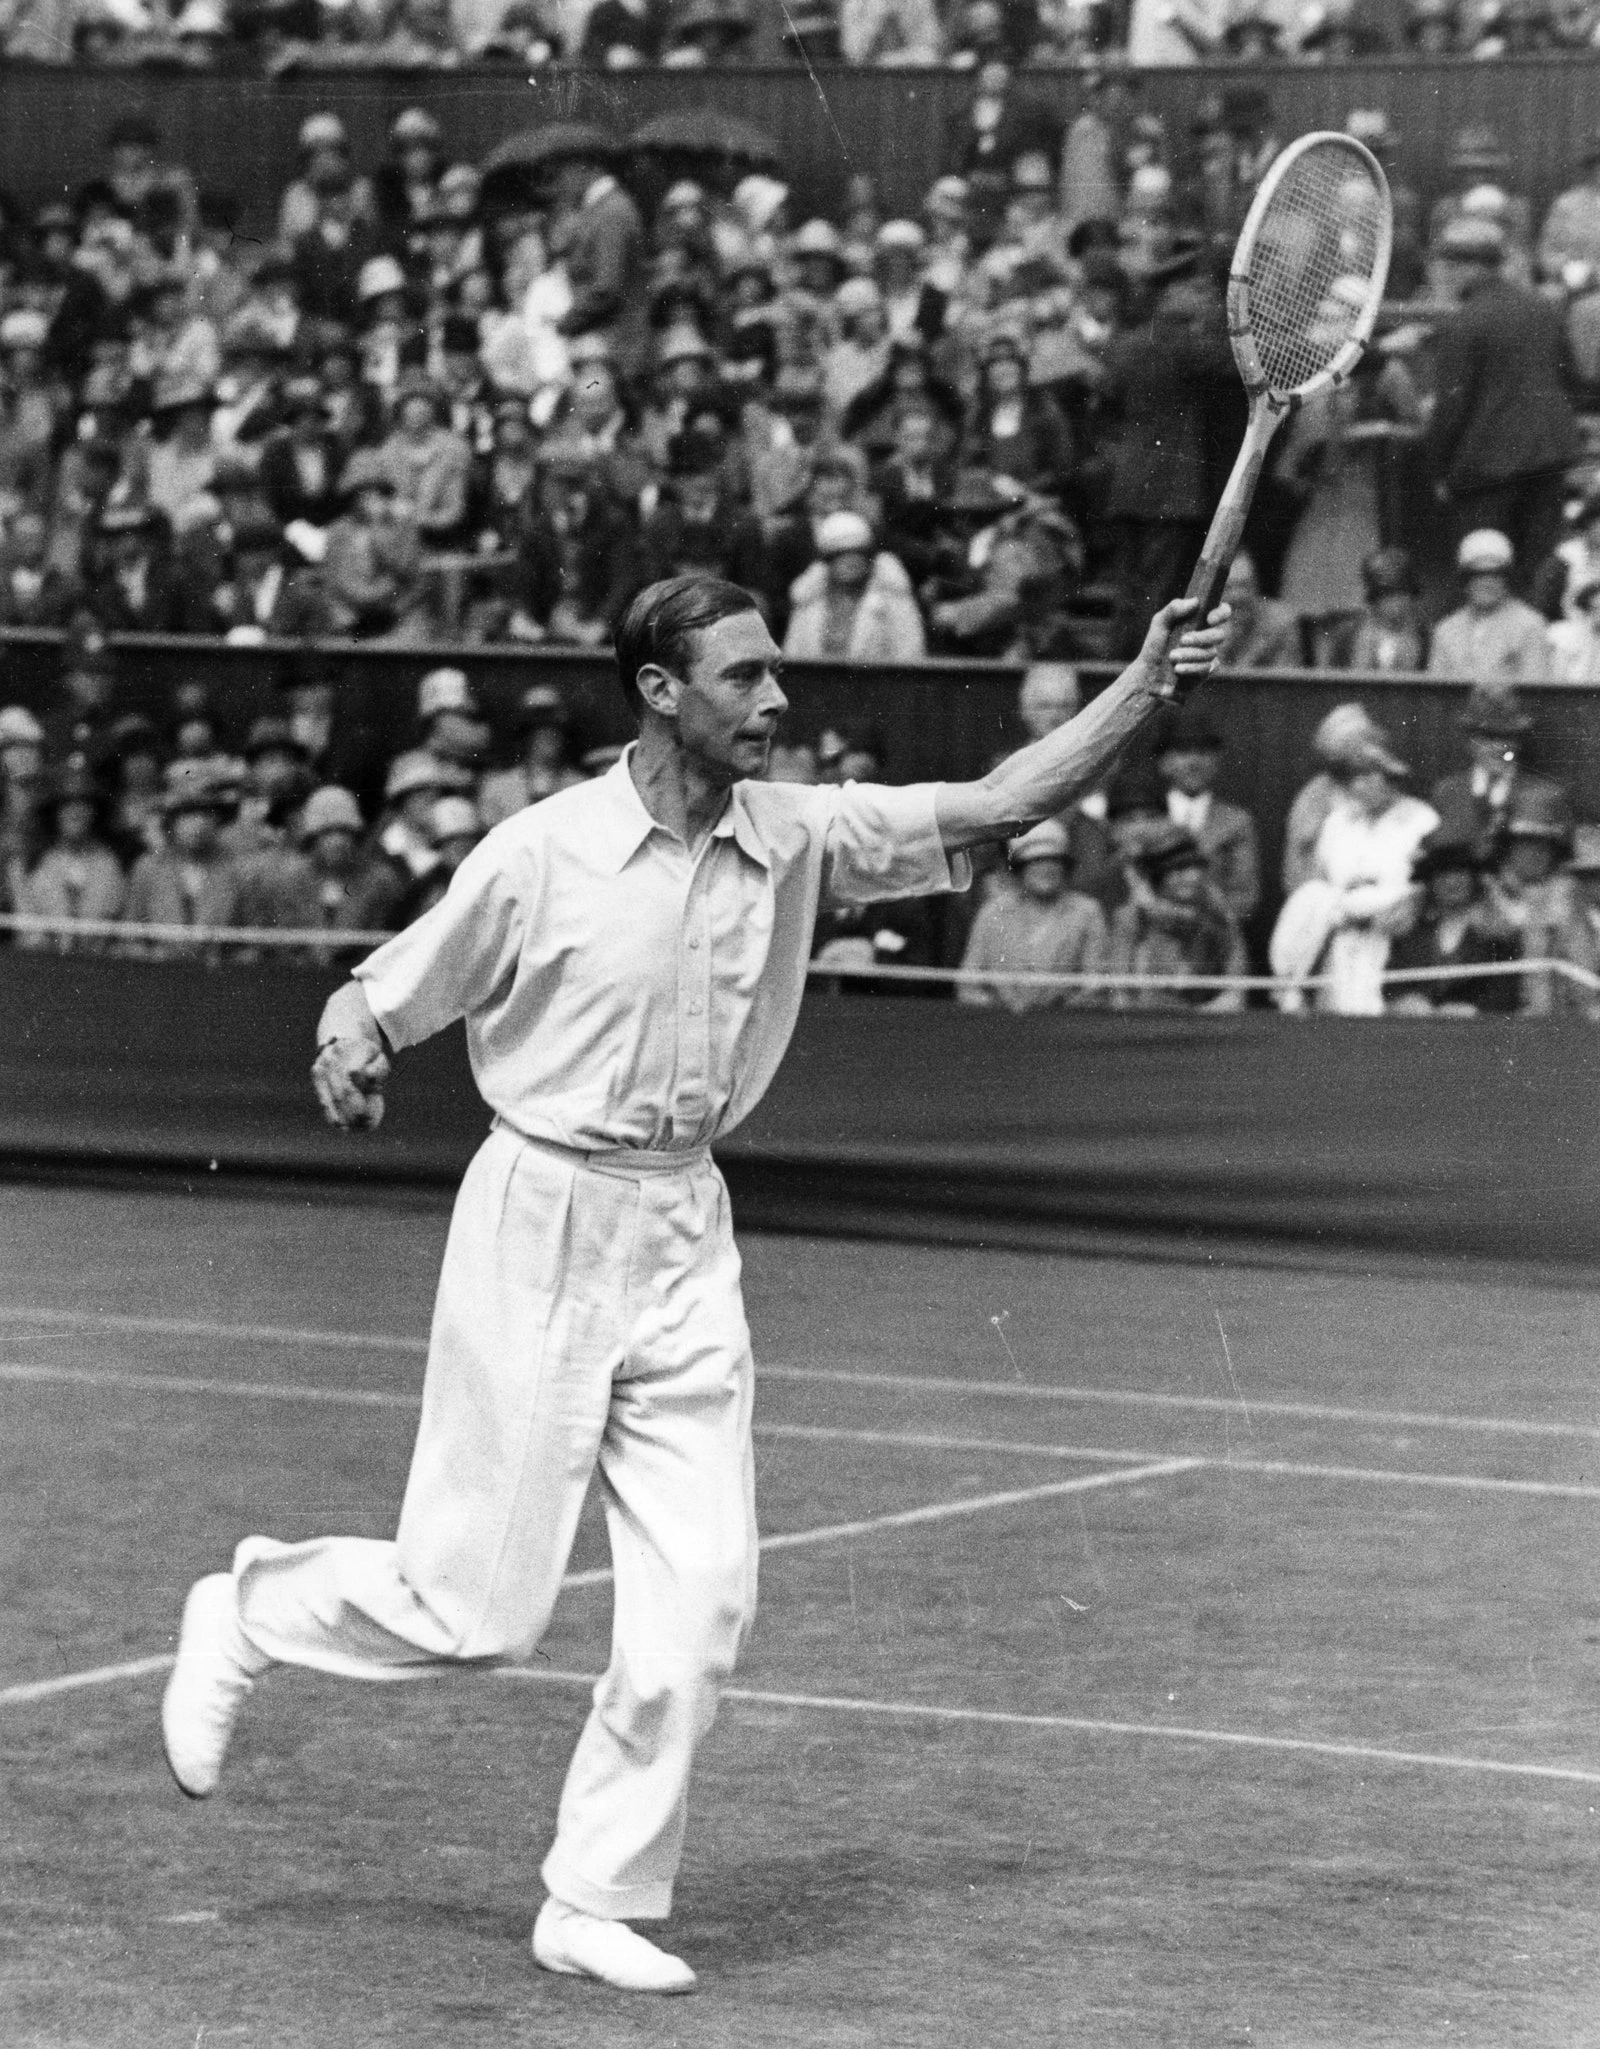 У 1926 році батько королеви Єлизавети, герцог Йоркський, майбутній король Георг VI, вирішив сам зіграти теніс на чемпіонаті. Він став першим членом королівської родини, який взяв участь у 